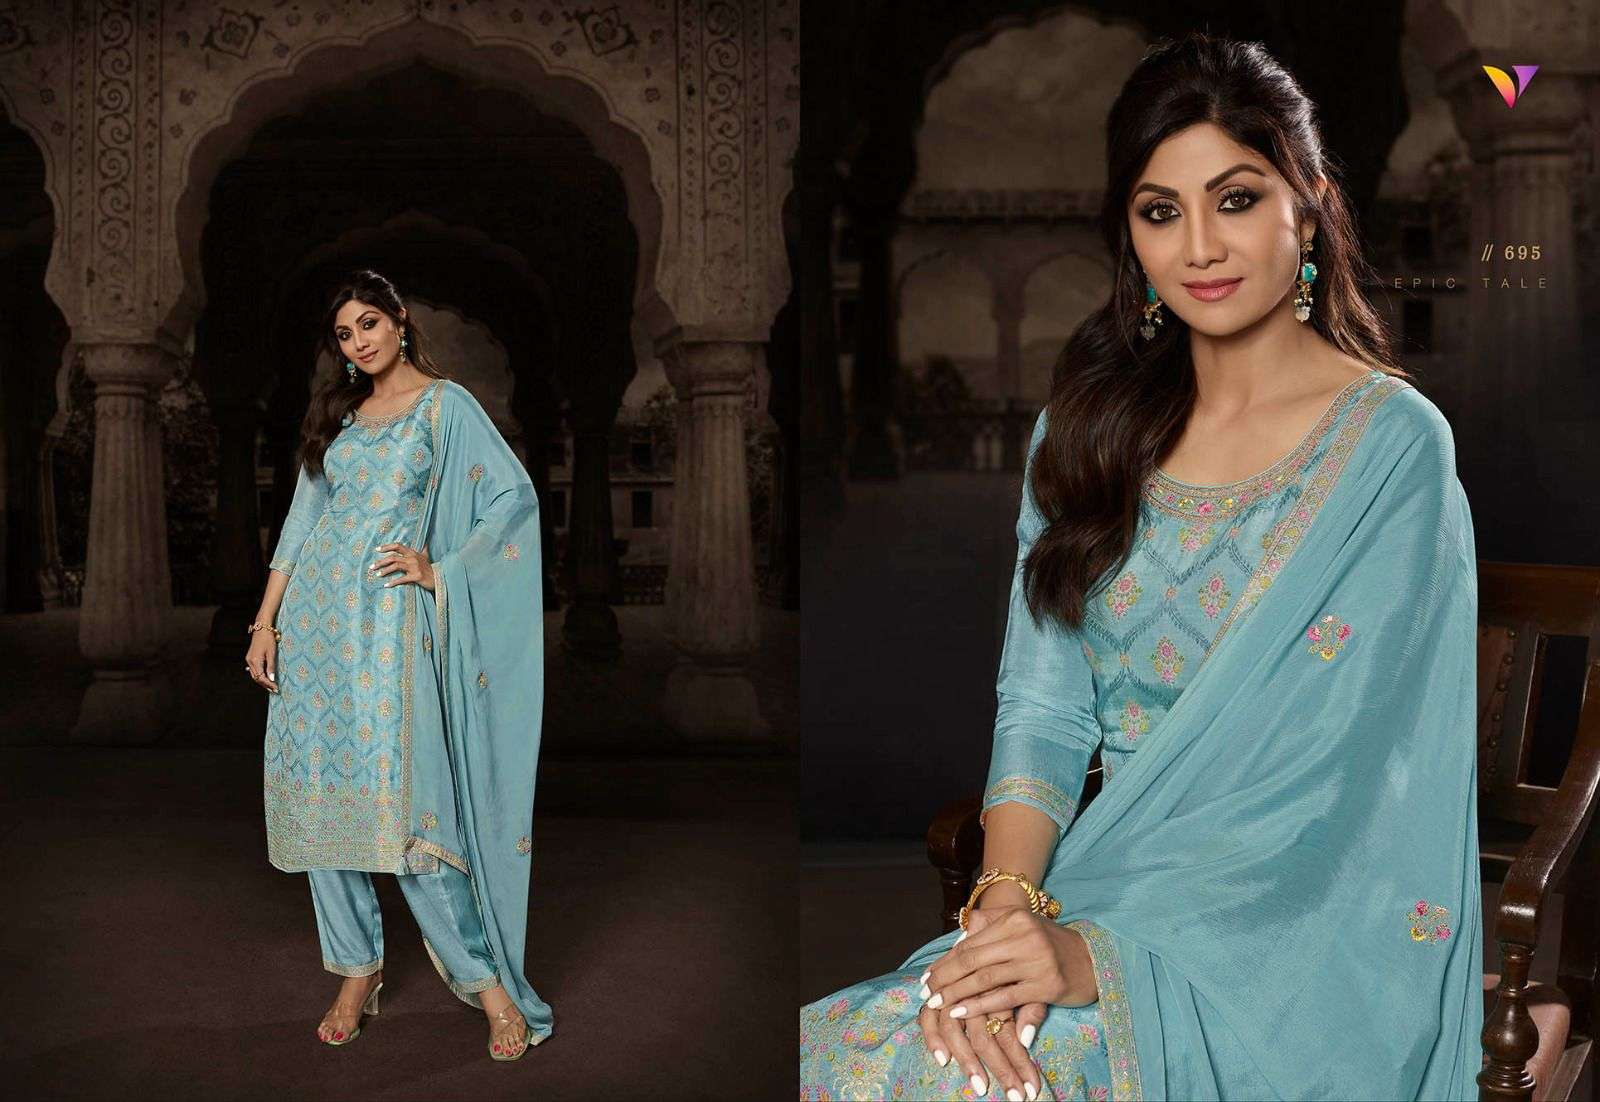 vatsam shilpa vol-4 691-696 series party wear designer salwar suits catalogue wholesale price surat